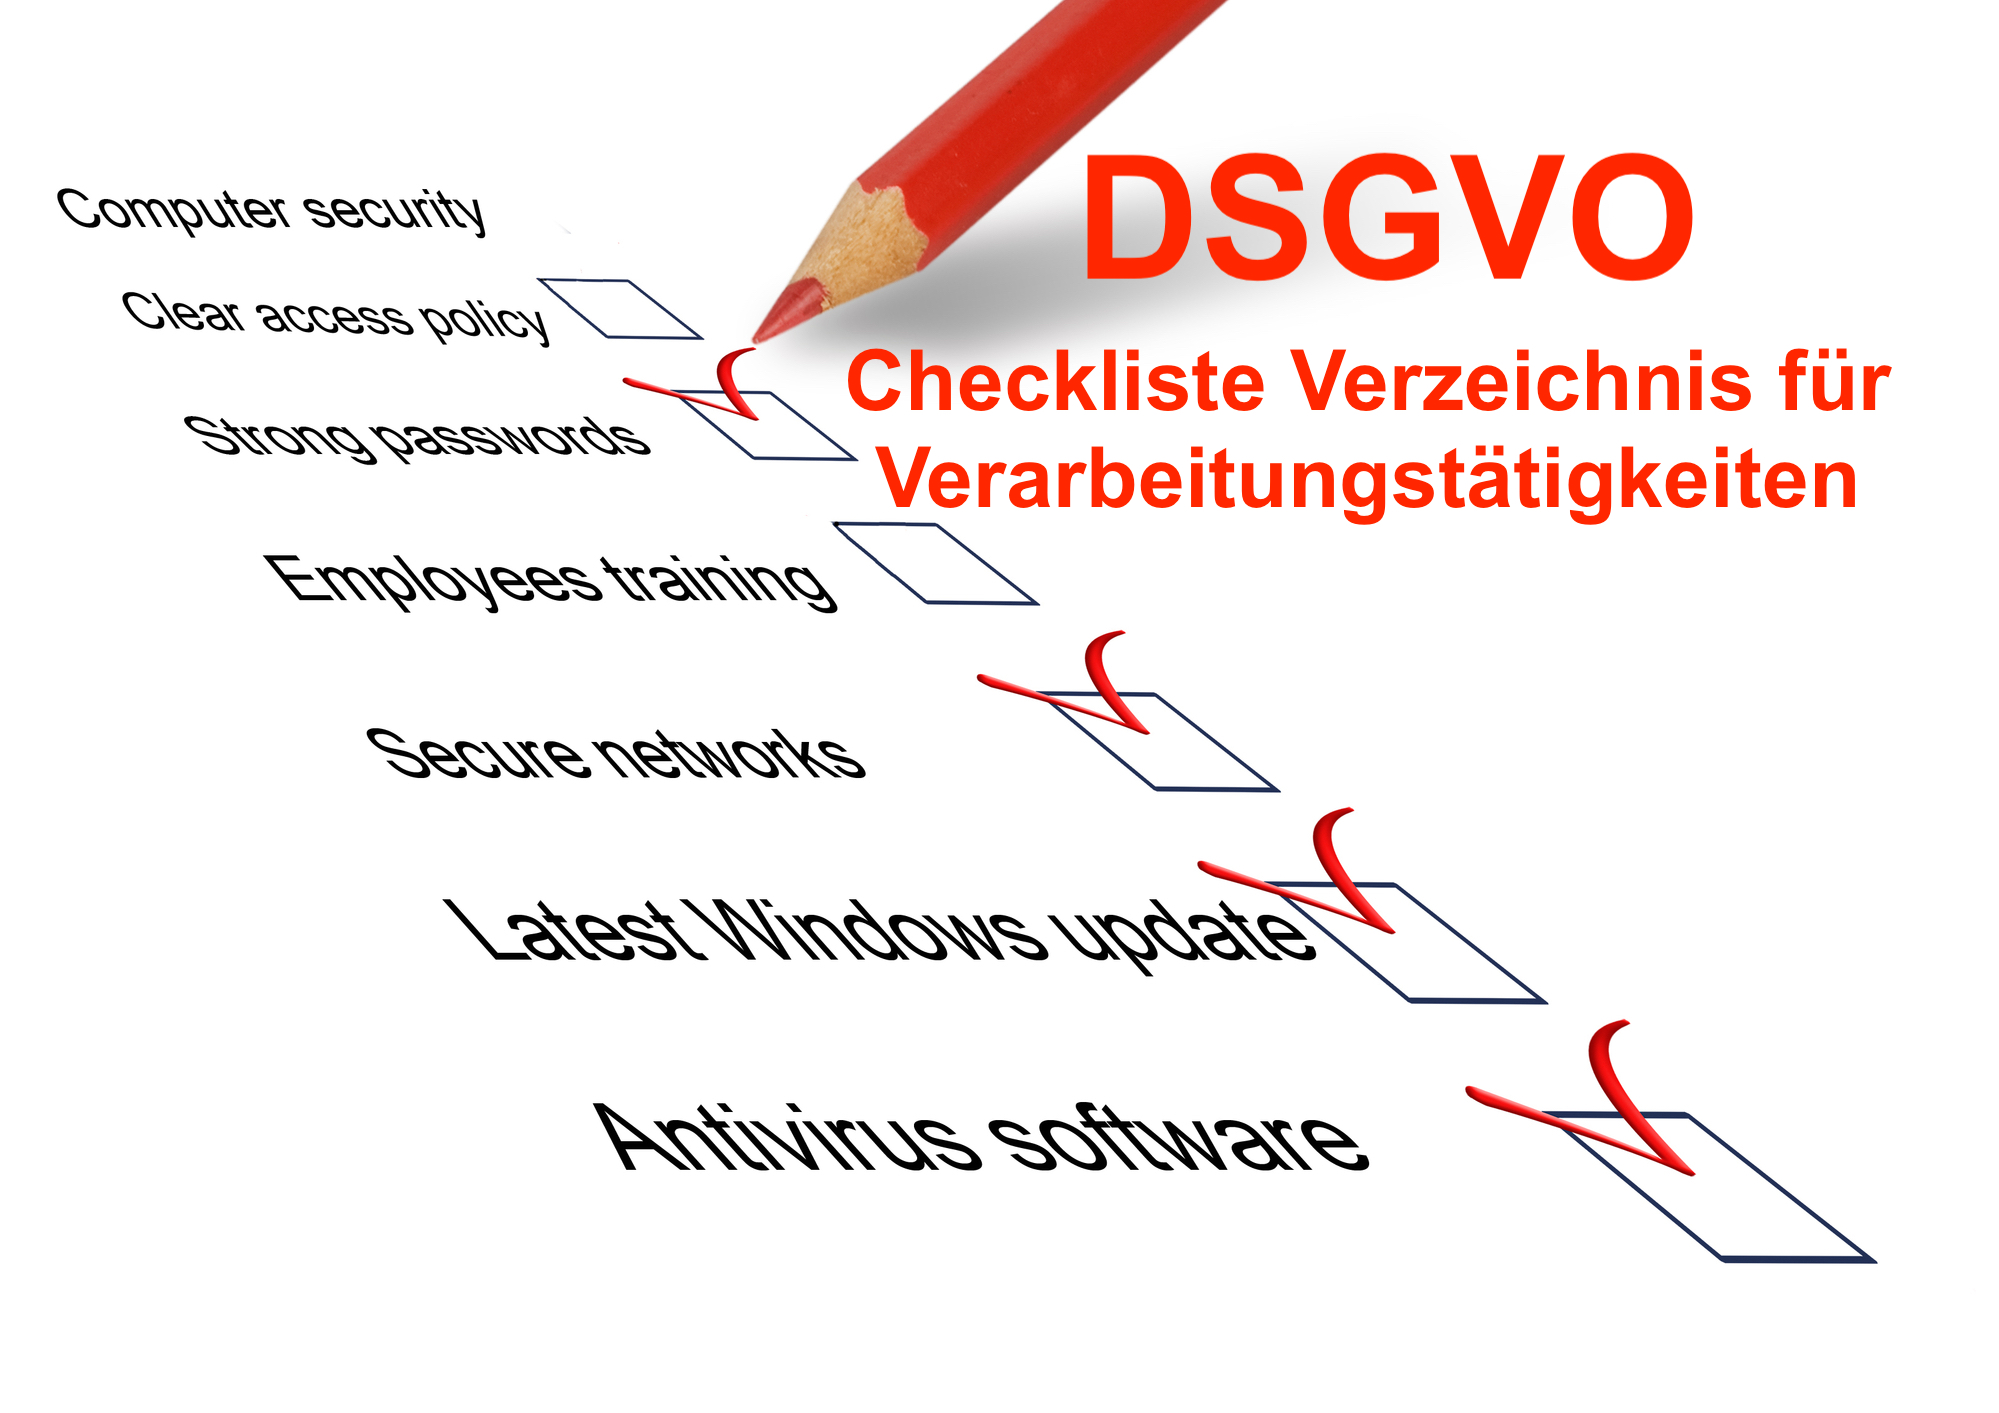 DSGVO Verzeichnis für Verarbeitungstätigkeiten Checkliste